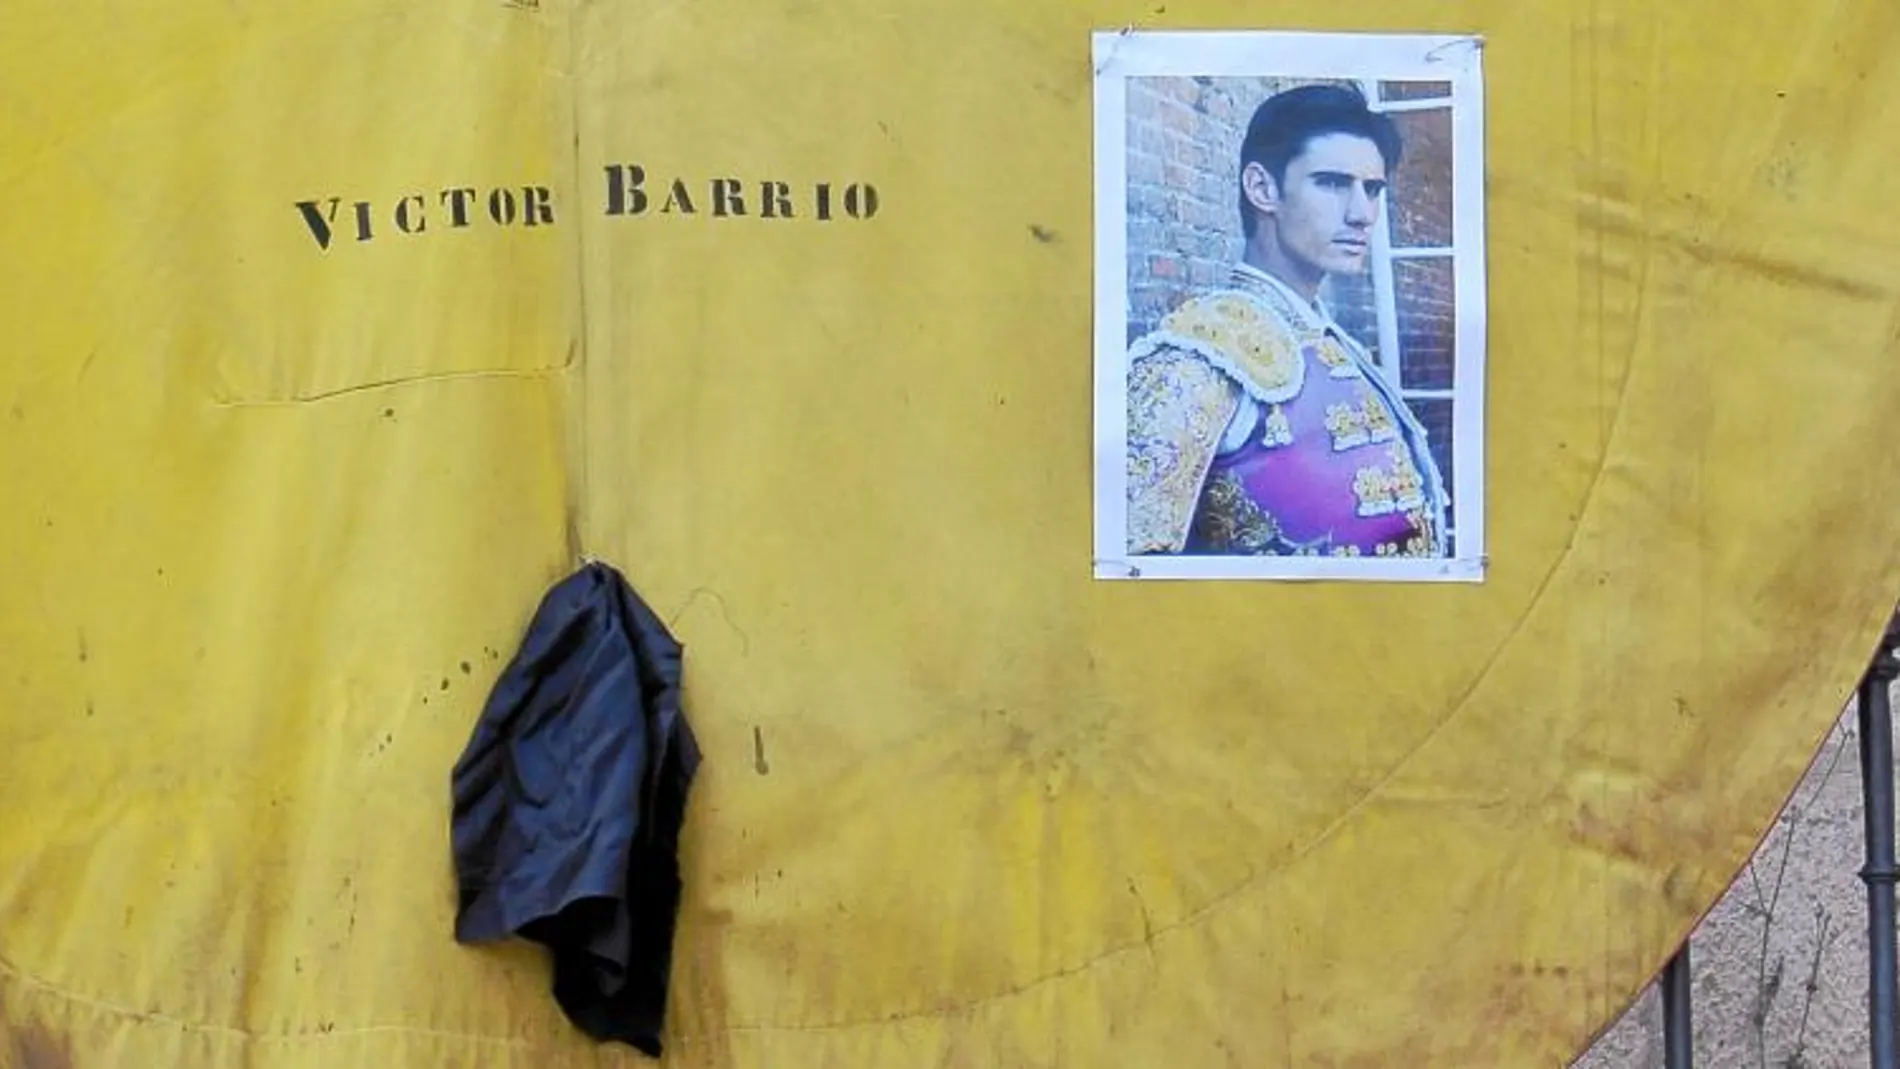 Un capote con la foto de Barrio y un crespón negro